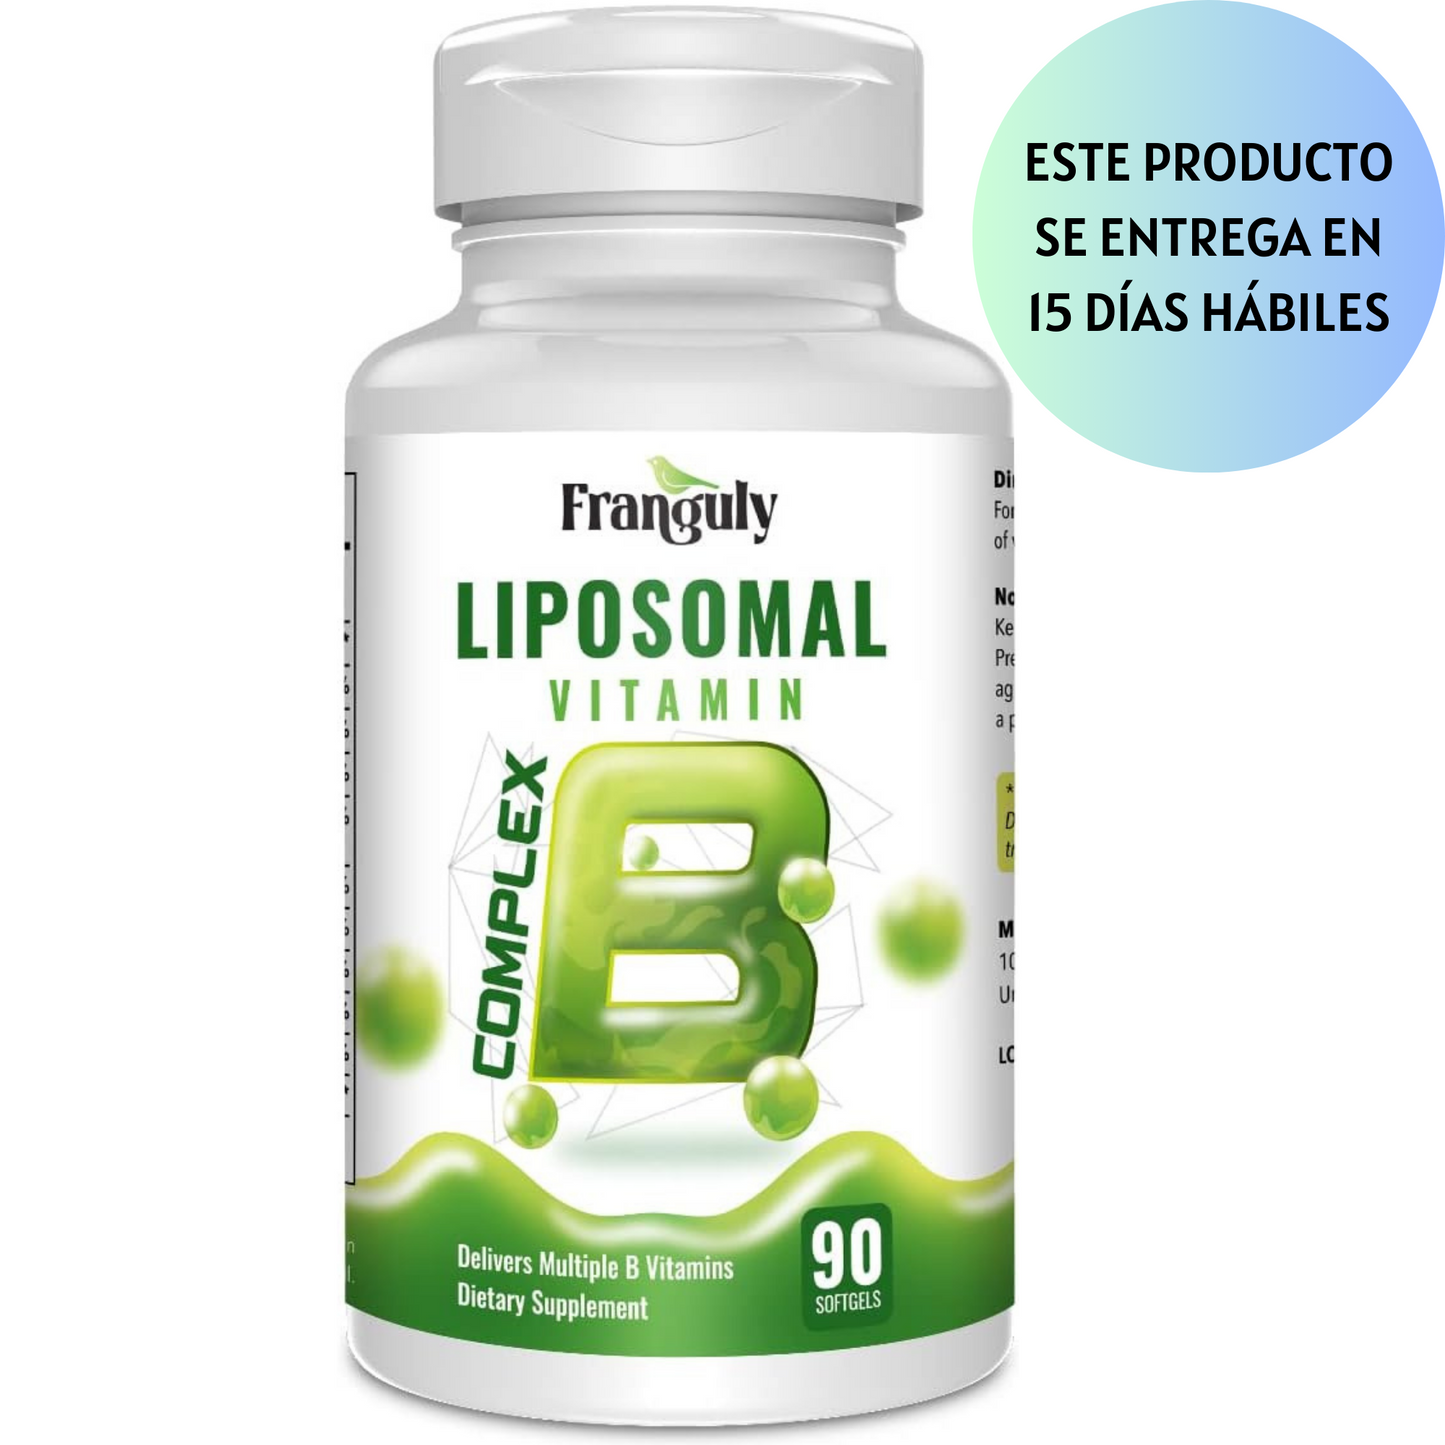 FRANGULY Vitaminas B activas del complejo B liposomal con colina e inositol, 90 cápsulas blandas de alta potencia B1, B2, B3, B5, B6, biotina, folato, B12 metilado, suplementos inmunológicos, energéticos, cerebrales y cardíacos